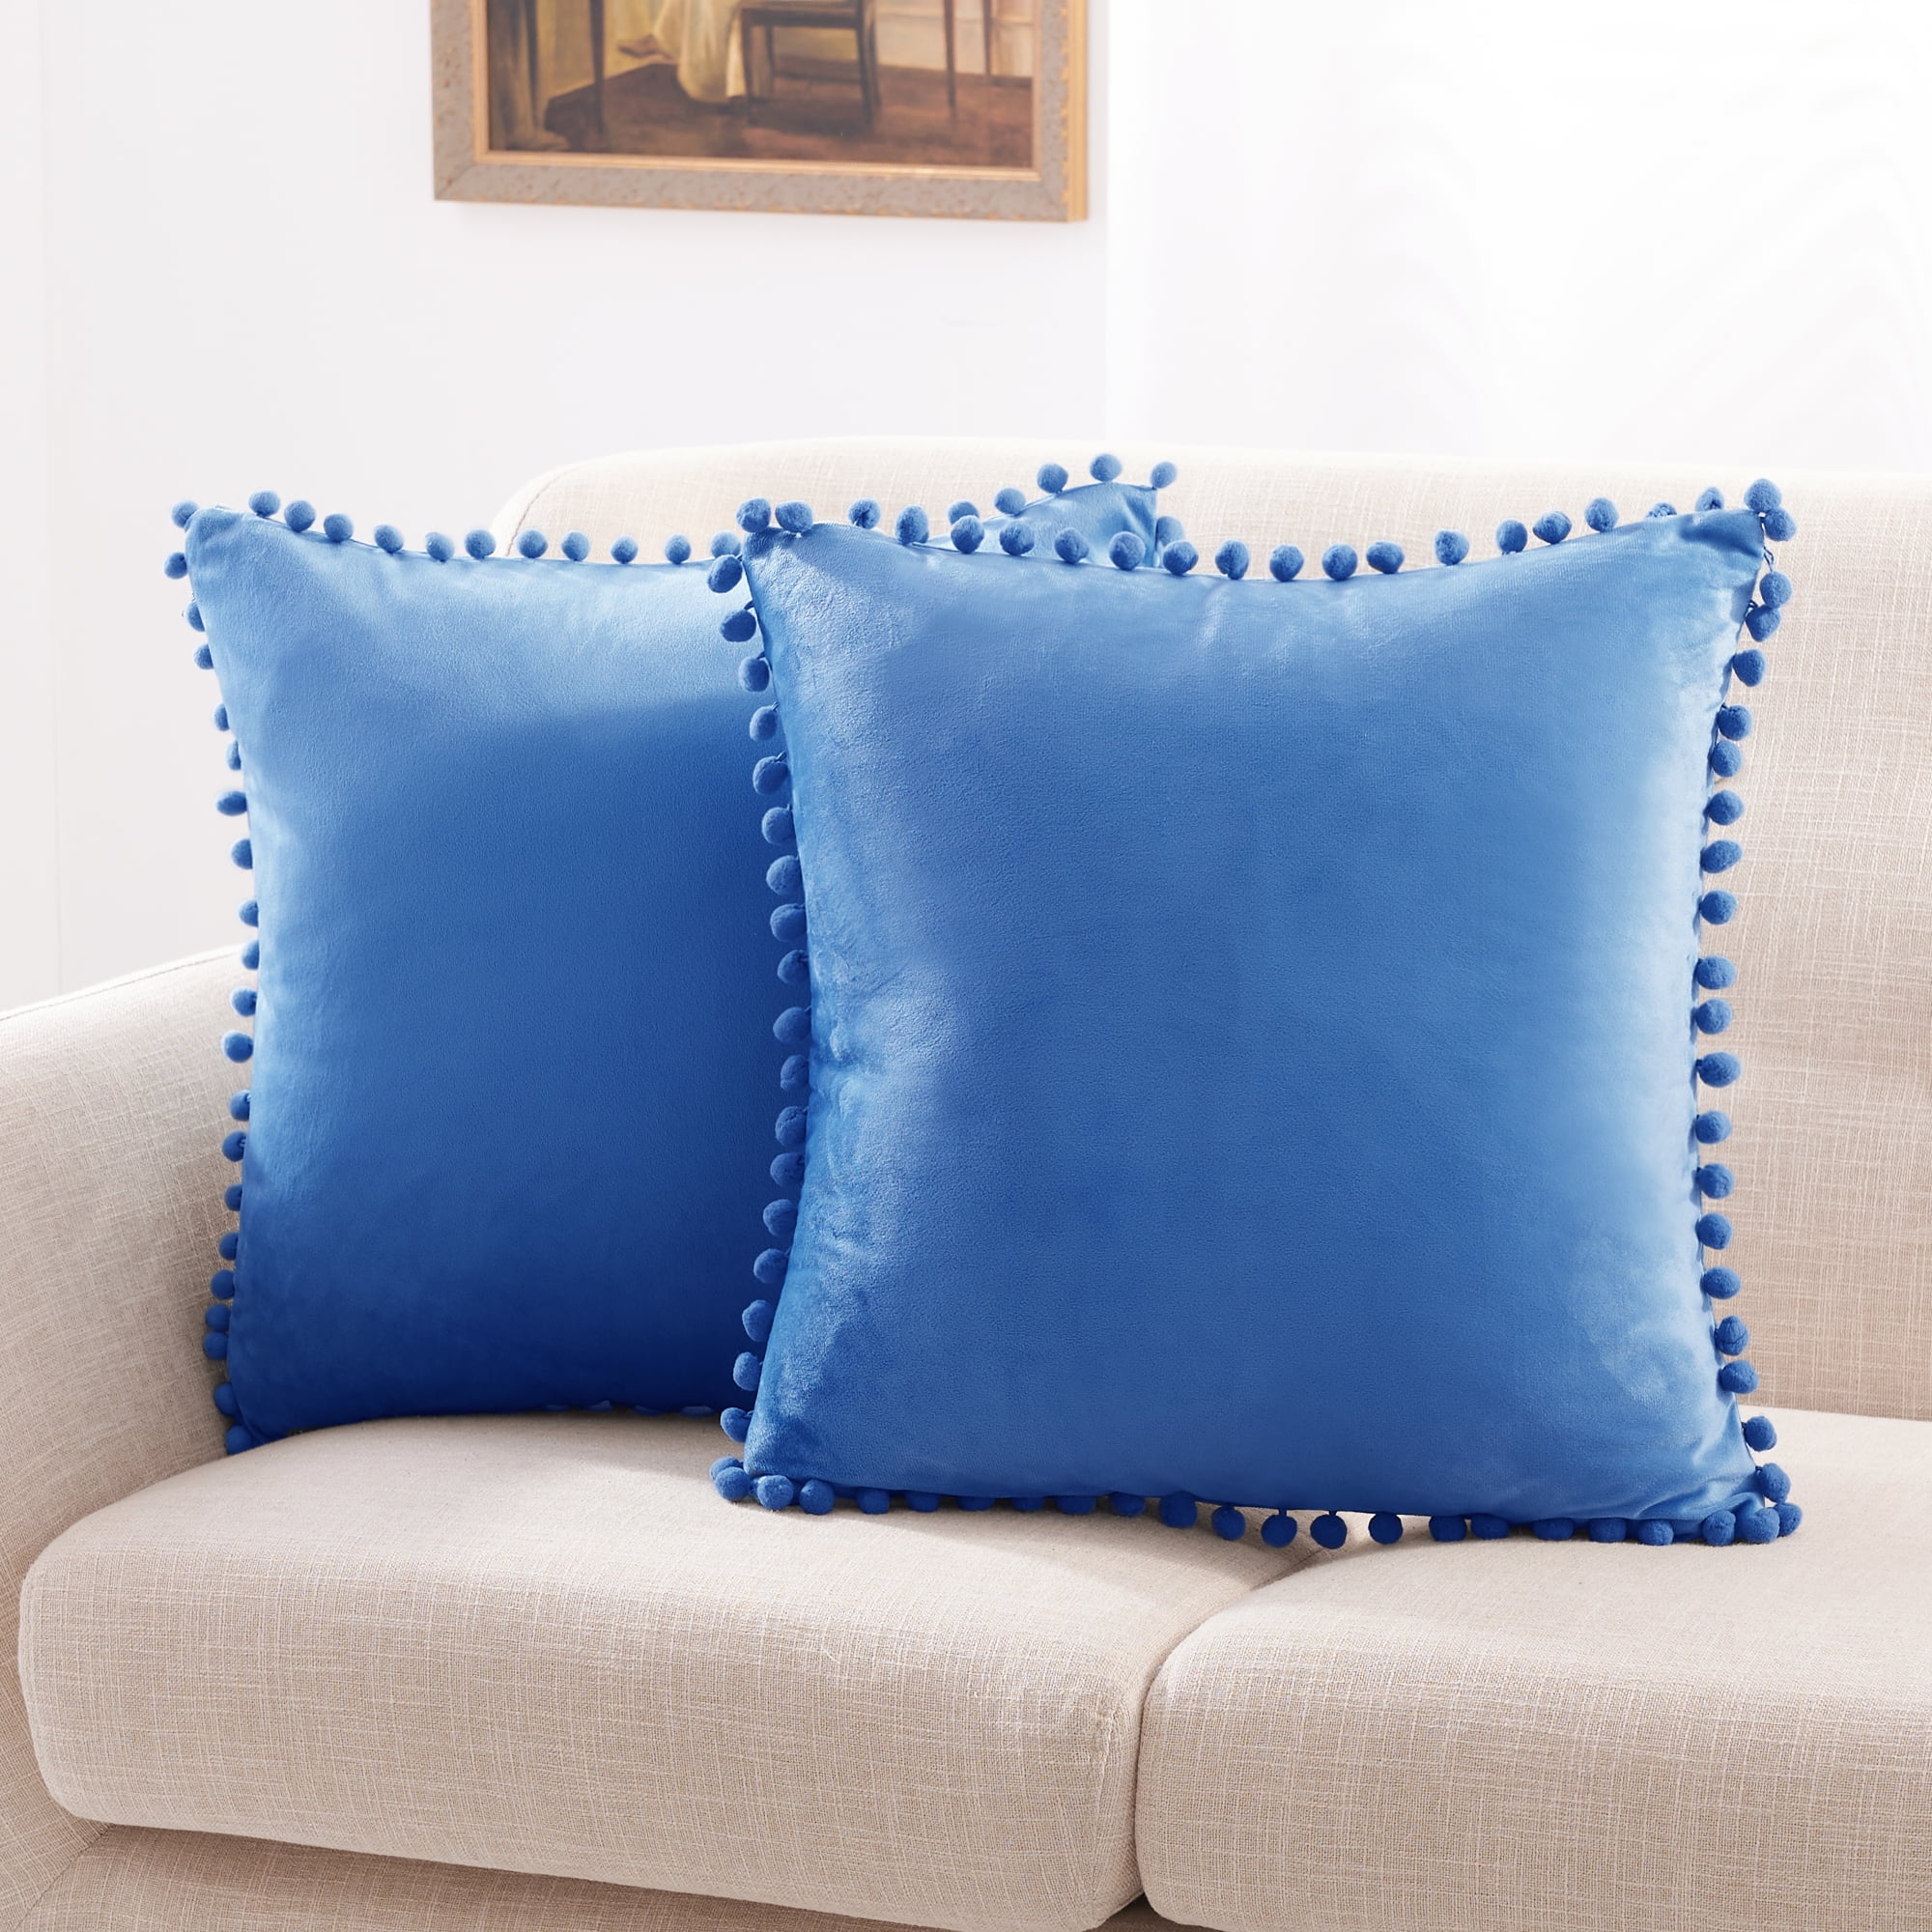 Set Of 2 Pcs Mandala Fringe Cushion Cover 16x16 Home Decor Square Pillow Cases 